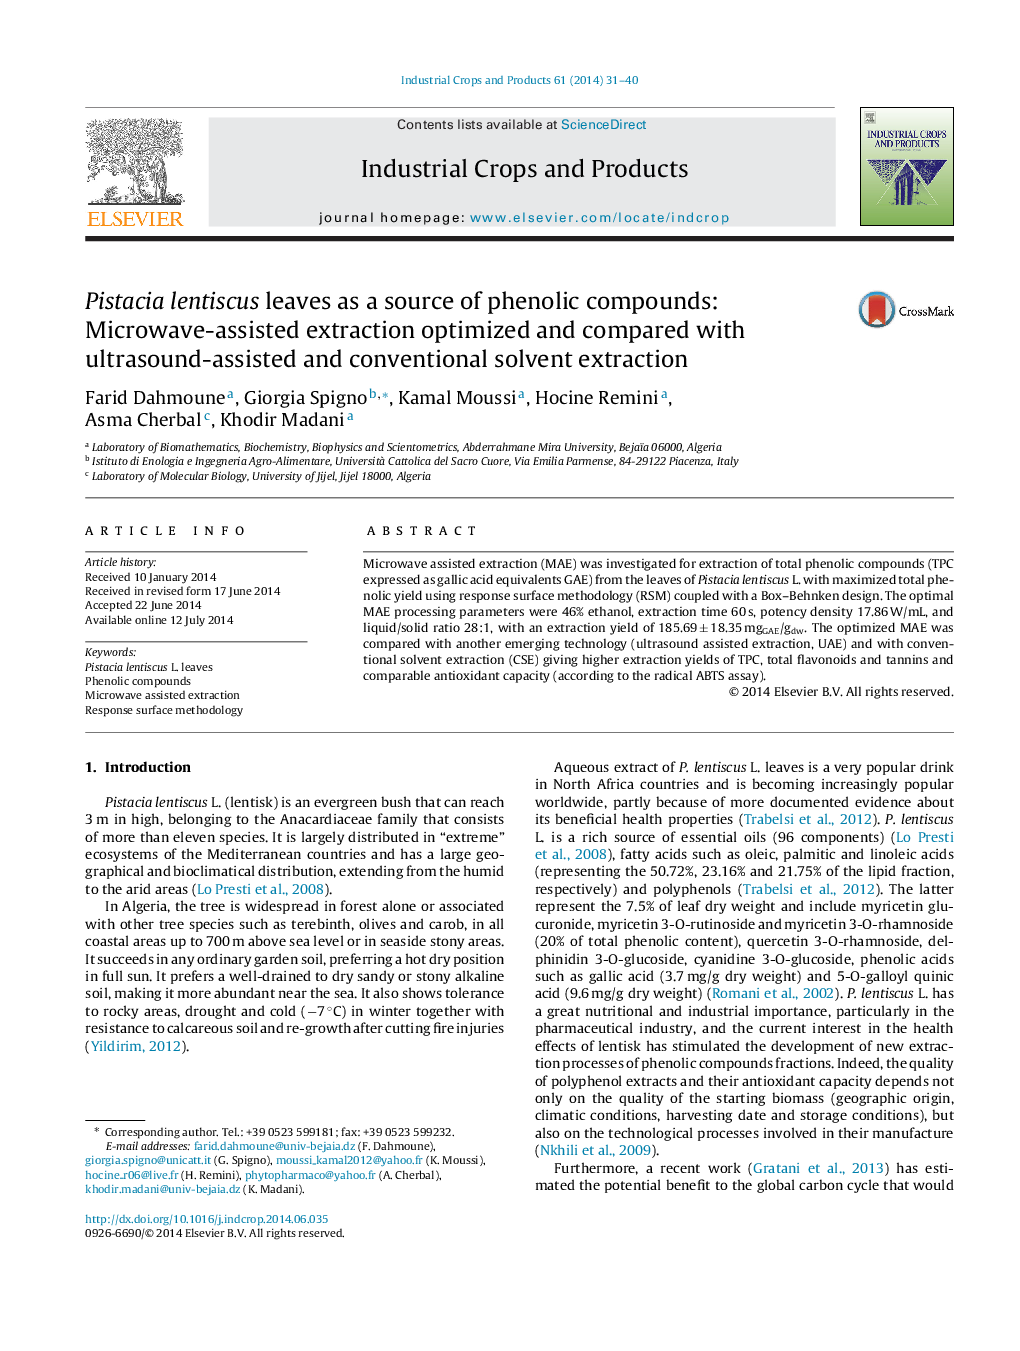 برگ پیستا لنتیوسک به عنوان منبع ترکیبات فنلی: استخراج کمک مایکروویو بهینه سازی شده و با استفاده از استخراج حلال با استفاده از سونوگرافی و متعارف مقایسه شده 